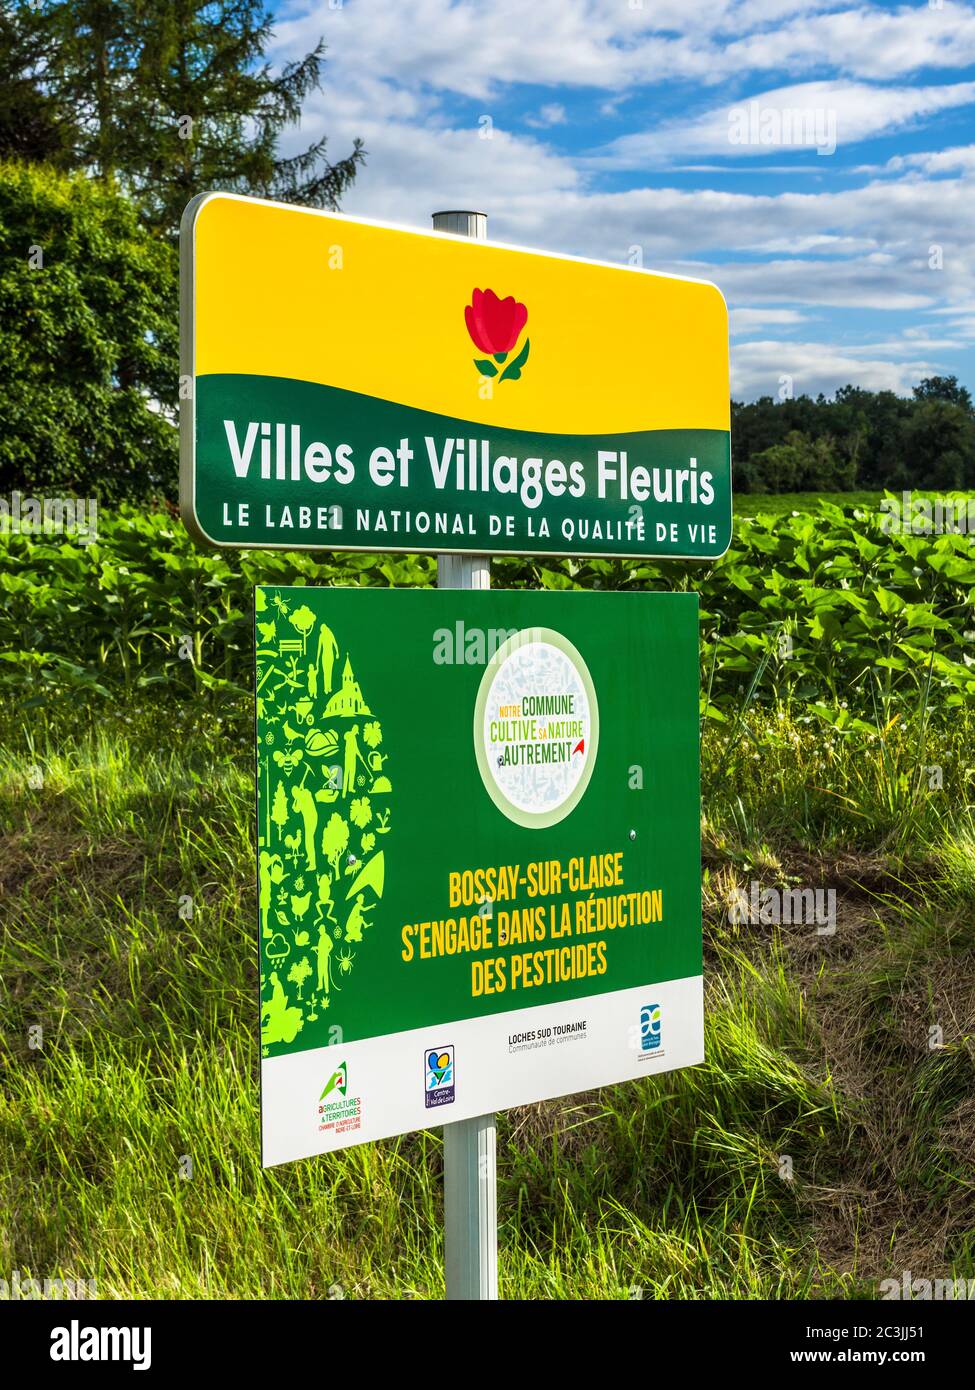 Schilder, die ein Dorf für Blumenausstellungen und auch die Reduzierung von Pestiziden auf lokalen Ackerland - Bossay-sur-Claise, Indre-et-Loire, Frankreich. Stockfoto